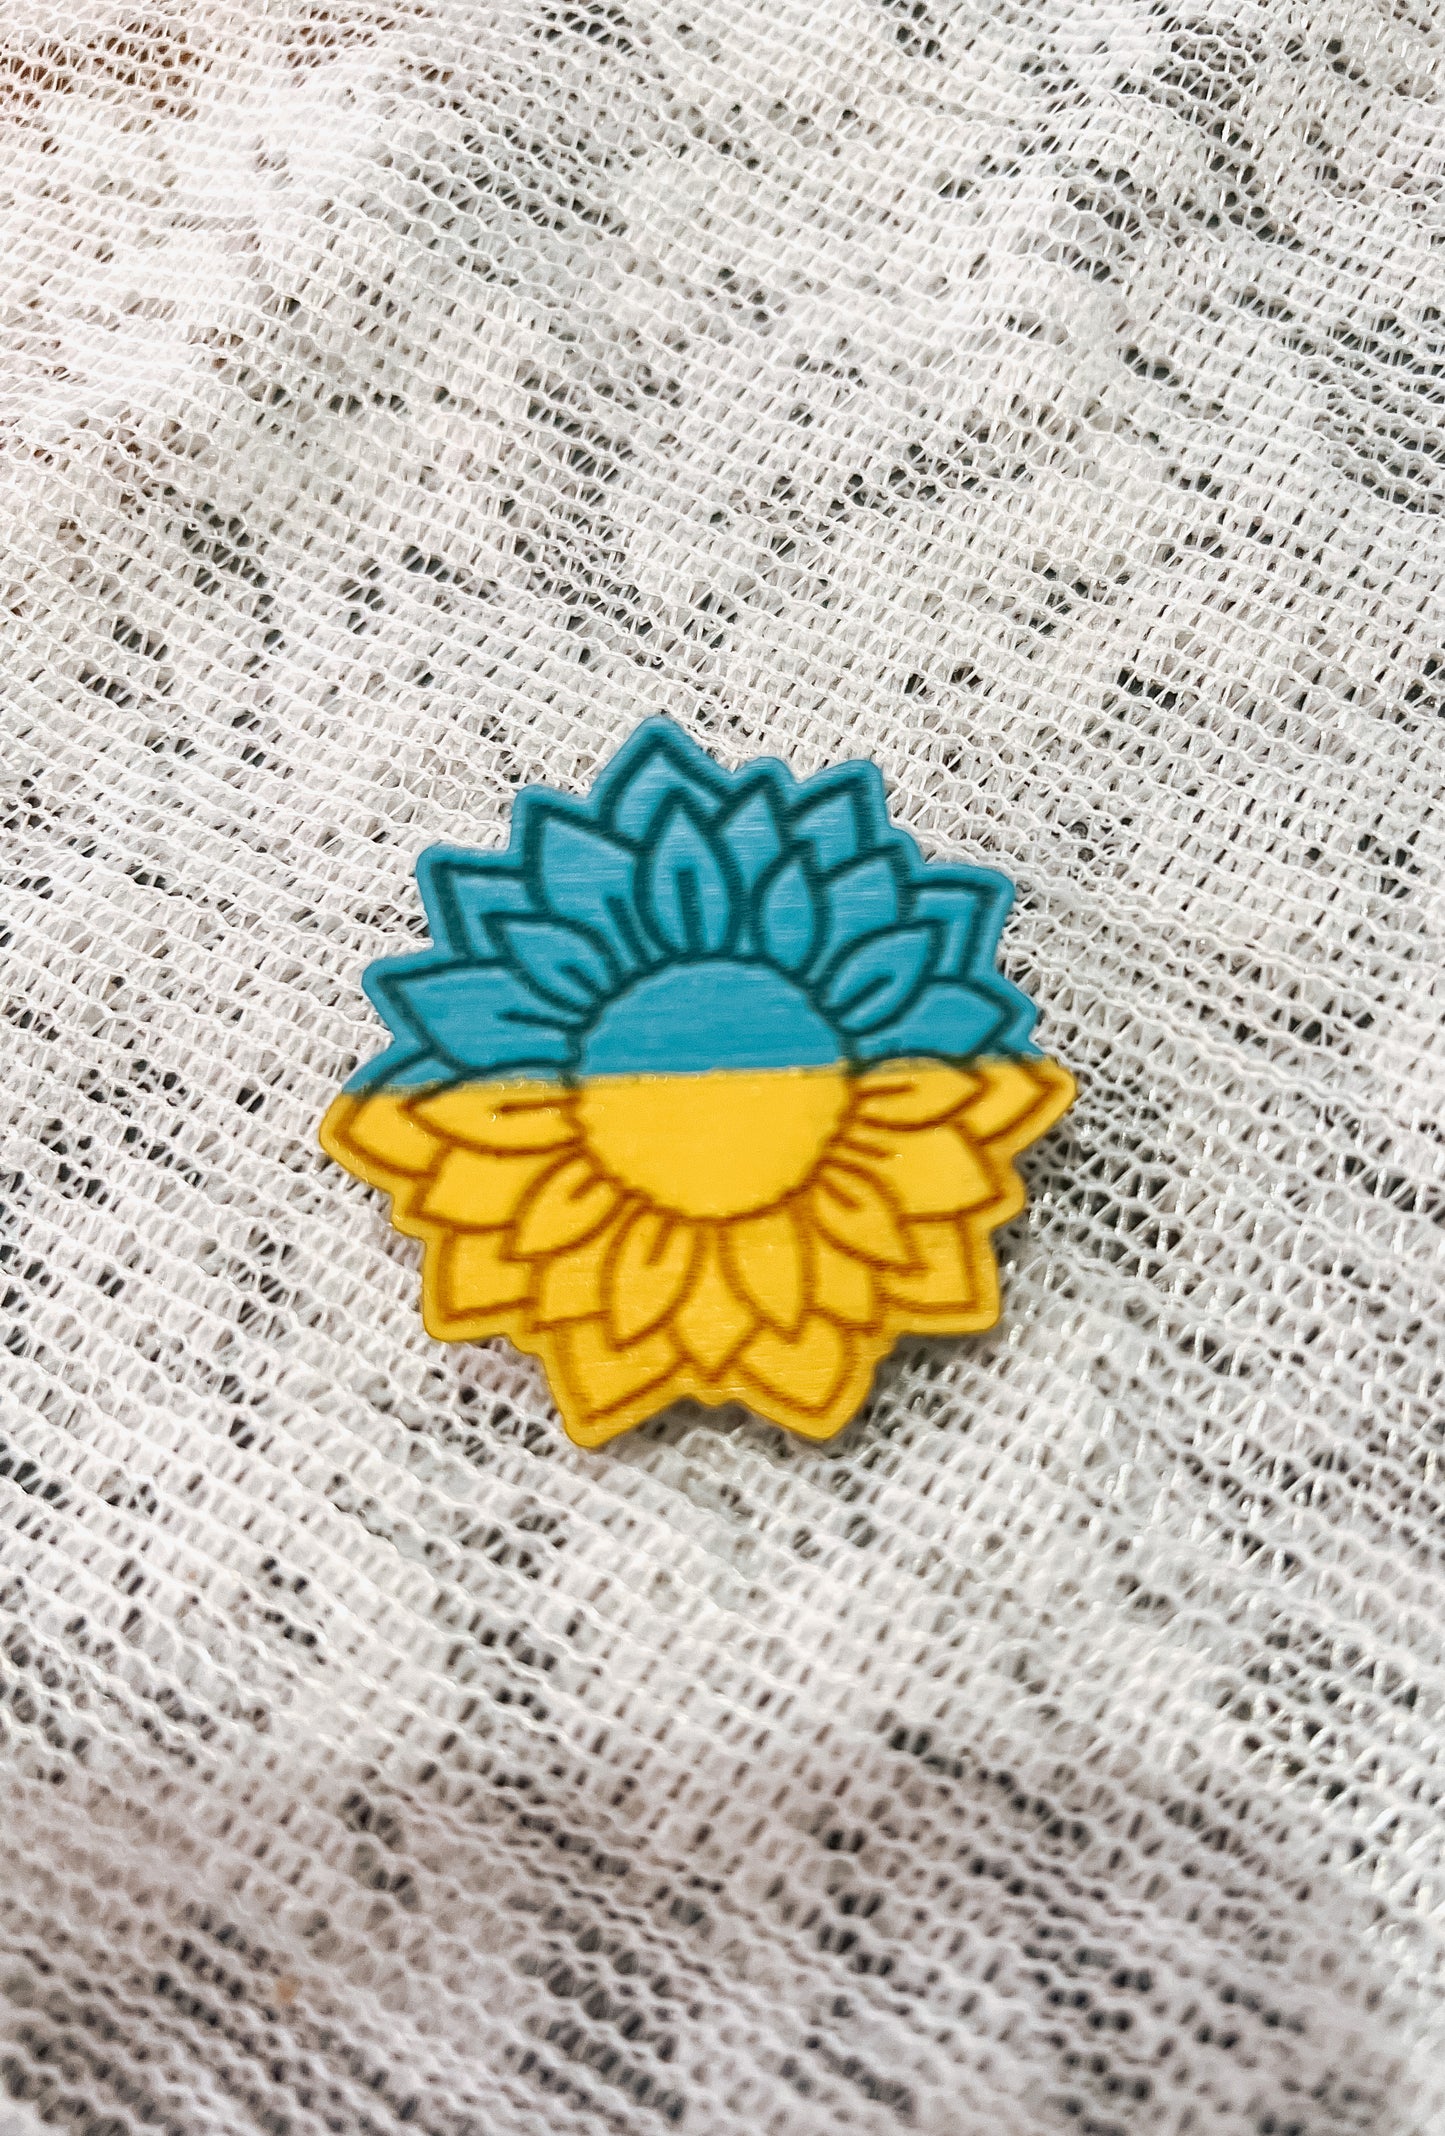 Pins for Ukraine